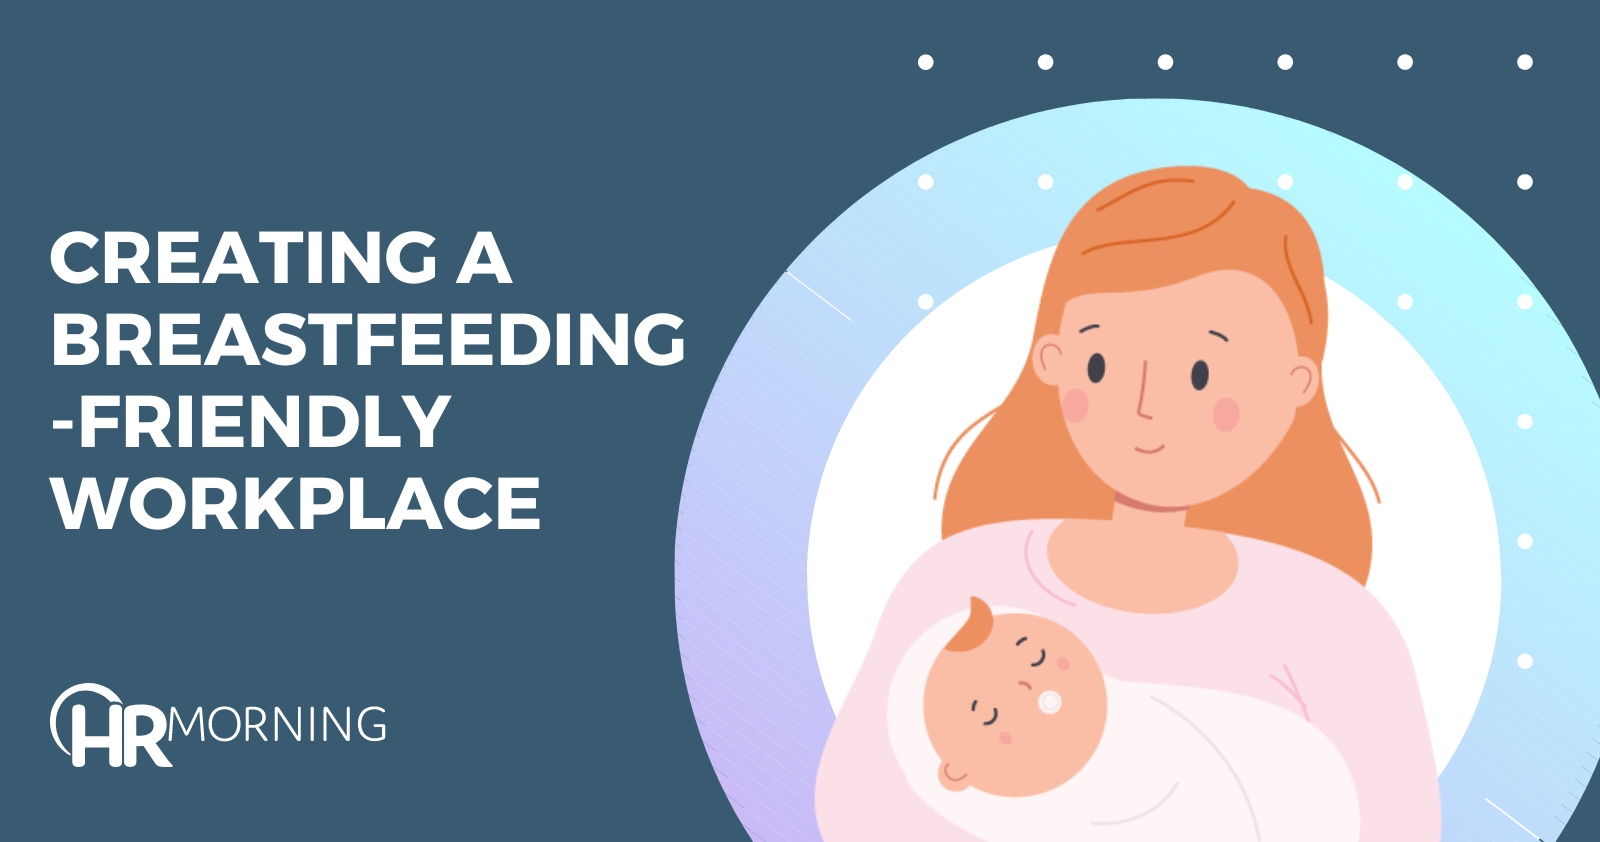 Creating a breastfeeding-friendly workplace